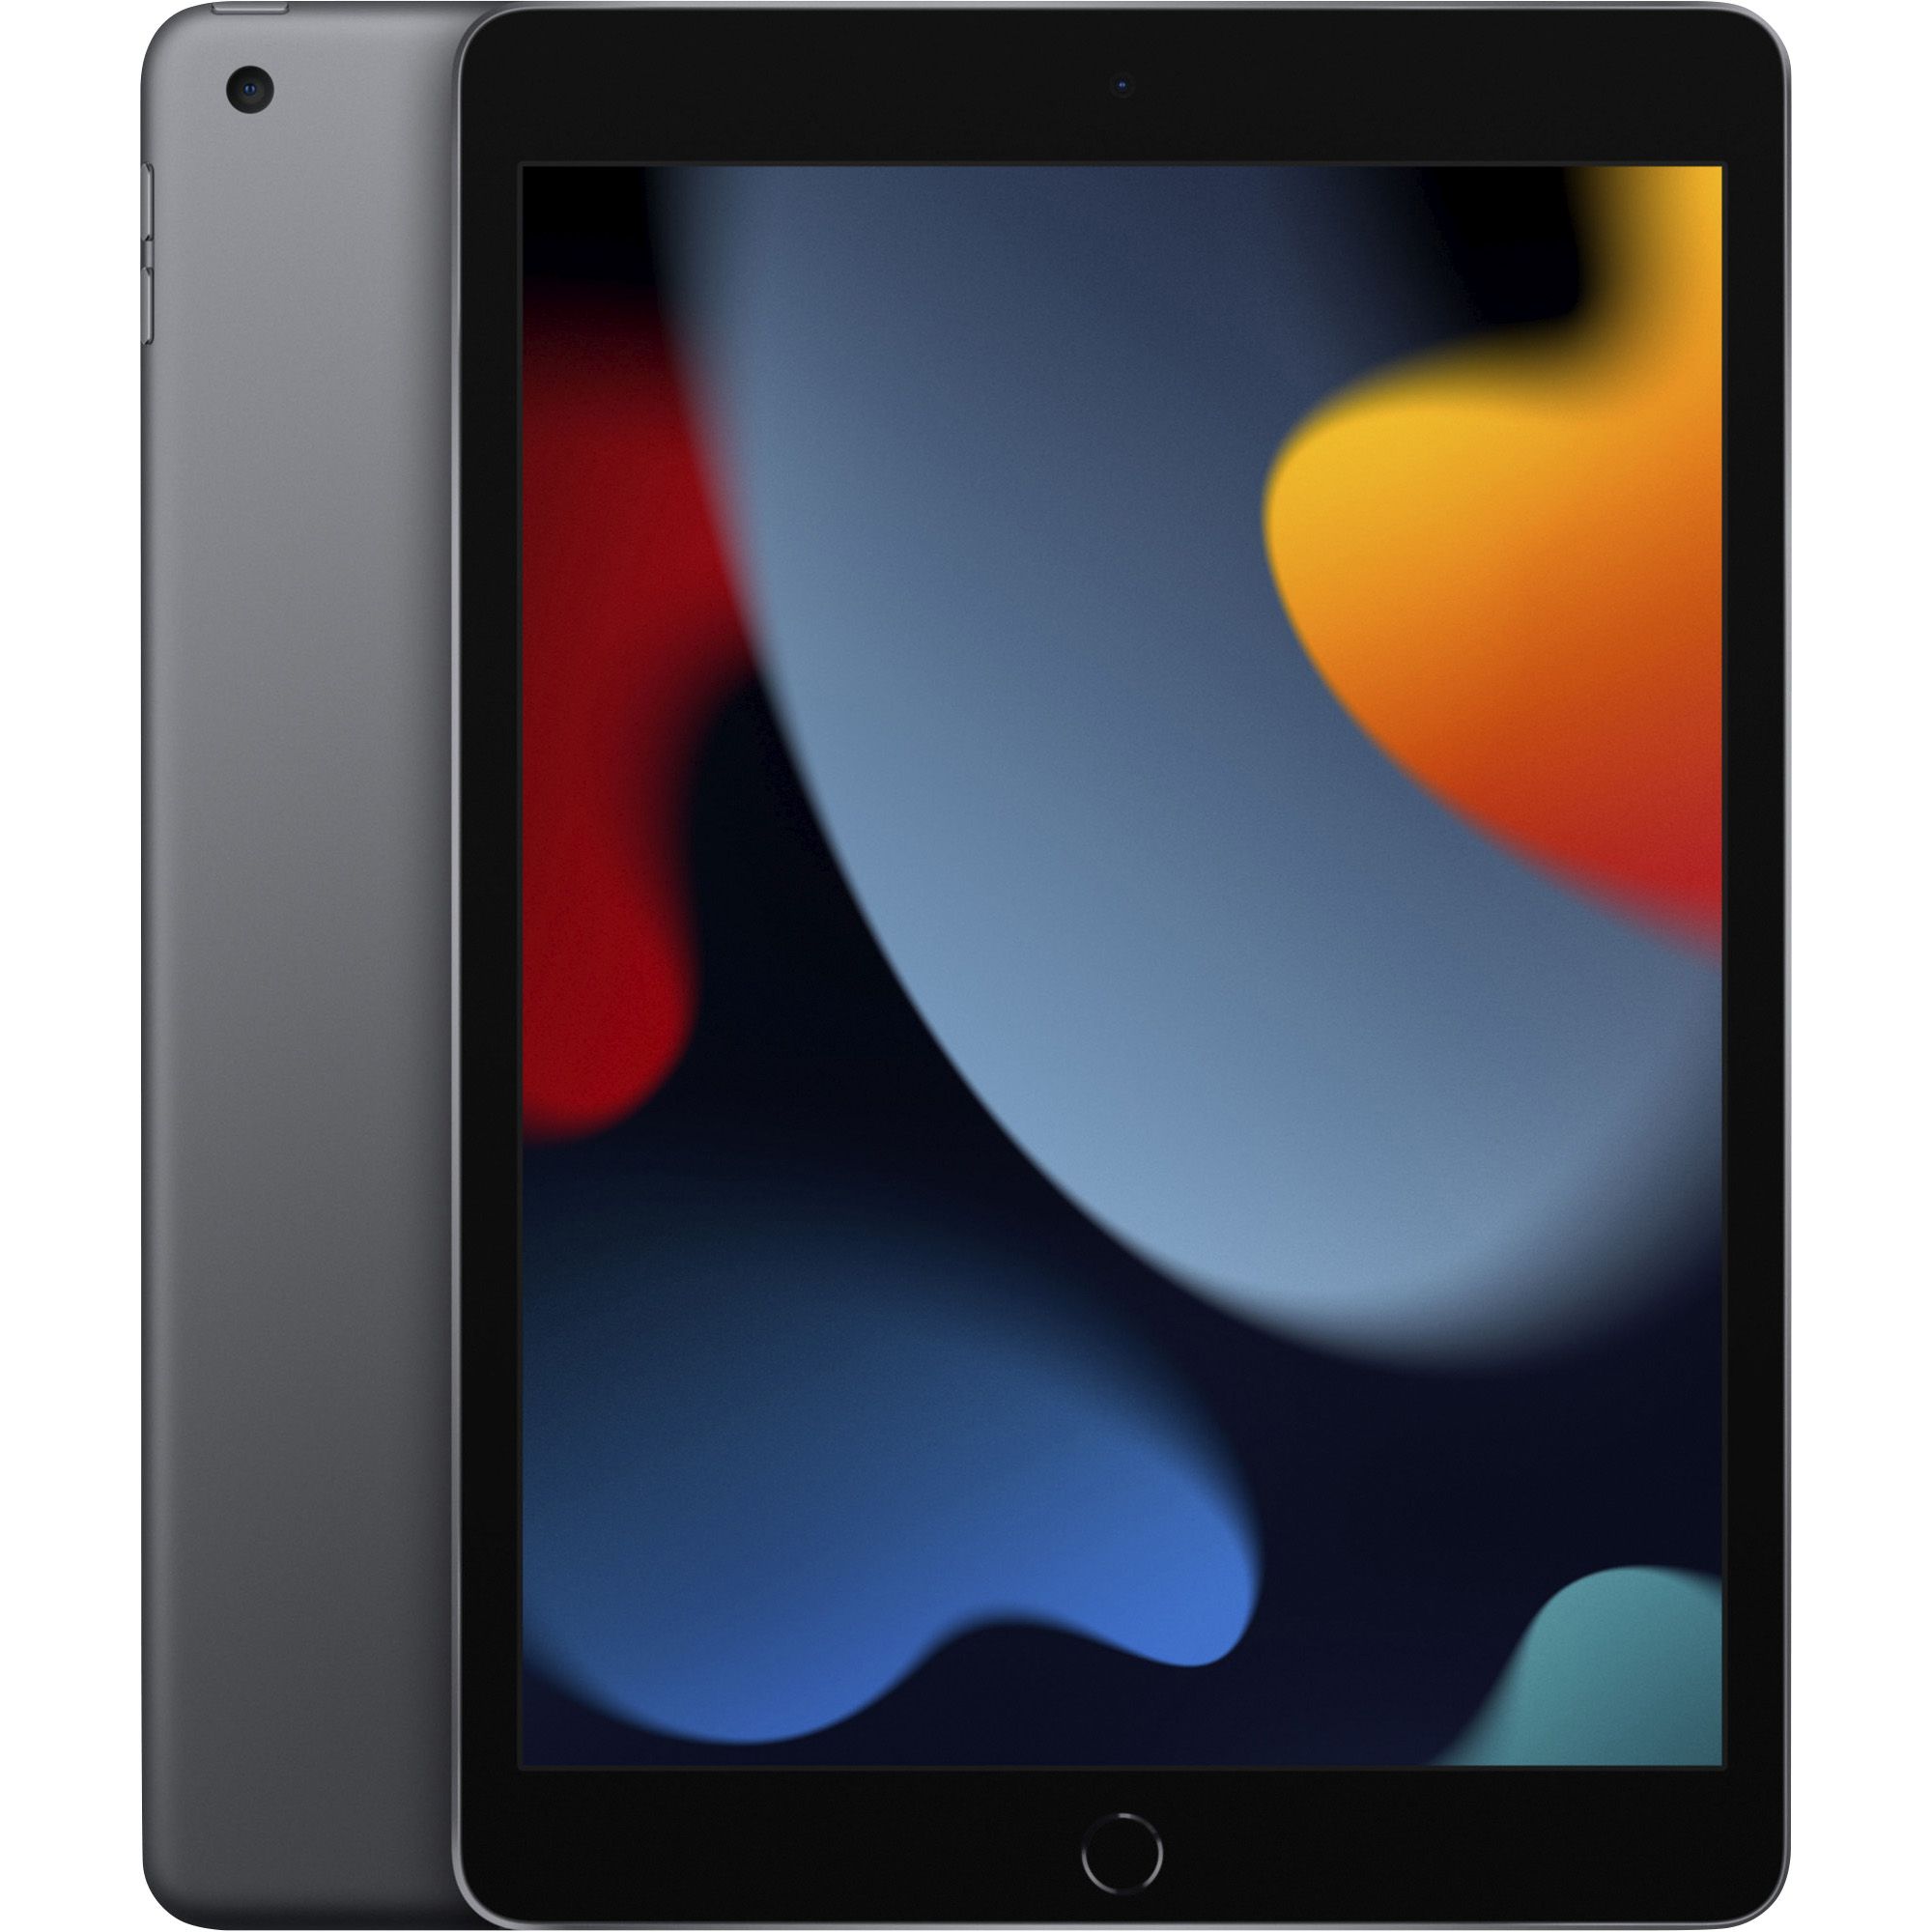 Fingerhut - Apple iPad A13 Bionic Chip 64GB Wi-Fi Tablet with 10.2